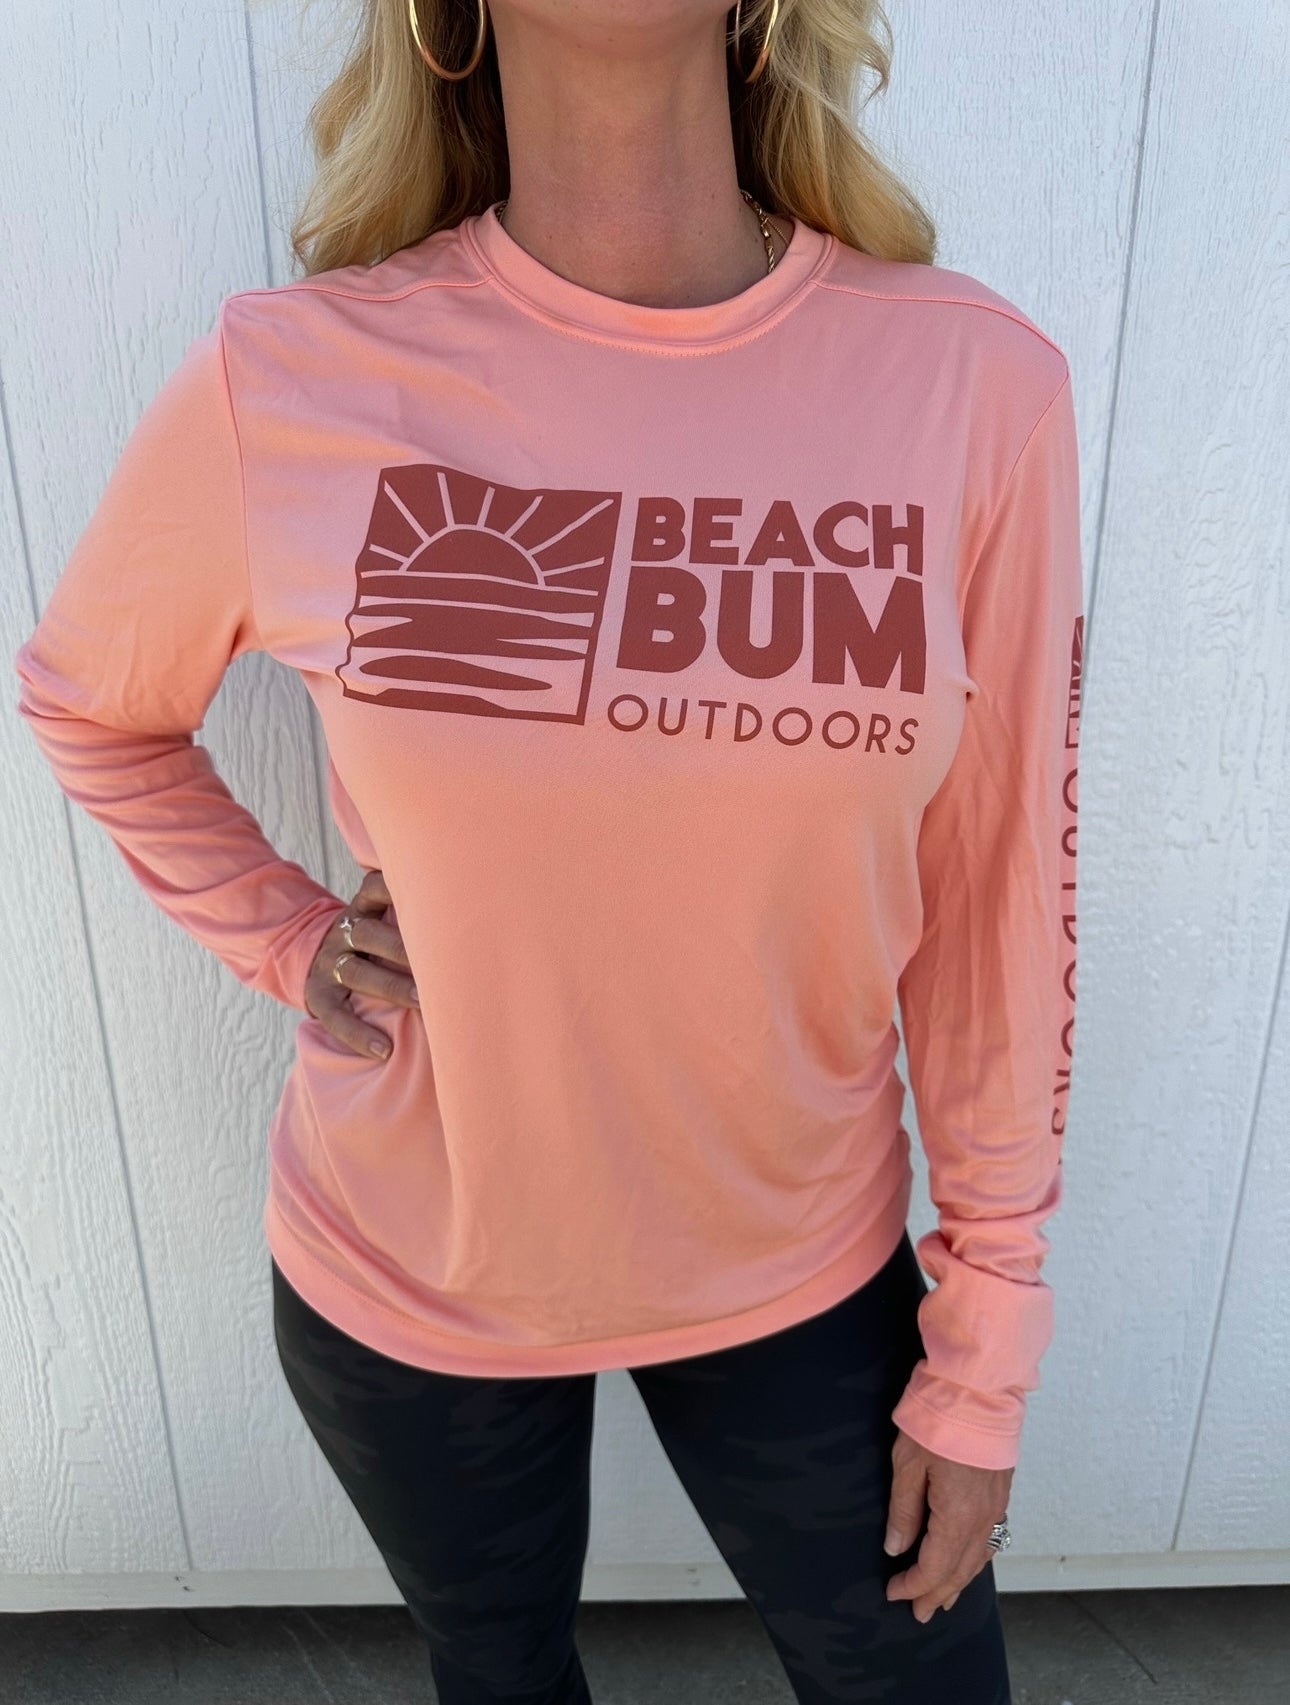 Beach Bum Outdoors Women's Performance Long Sleeve Crew Neck Shirt